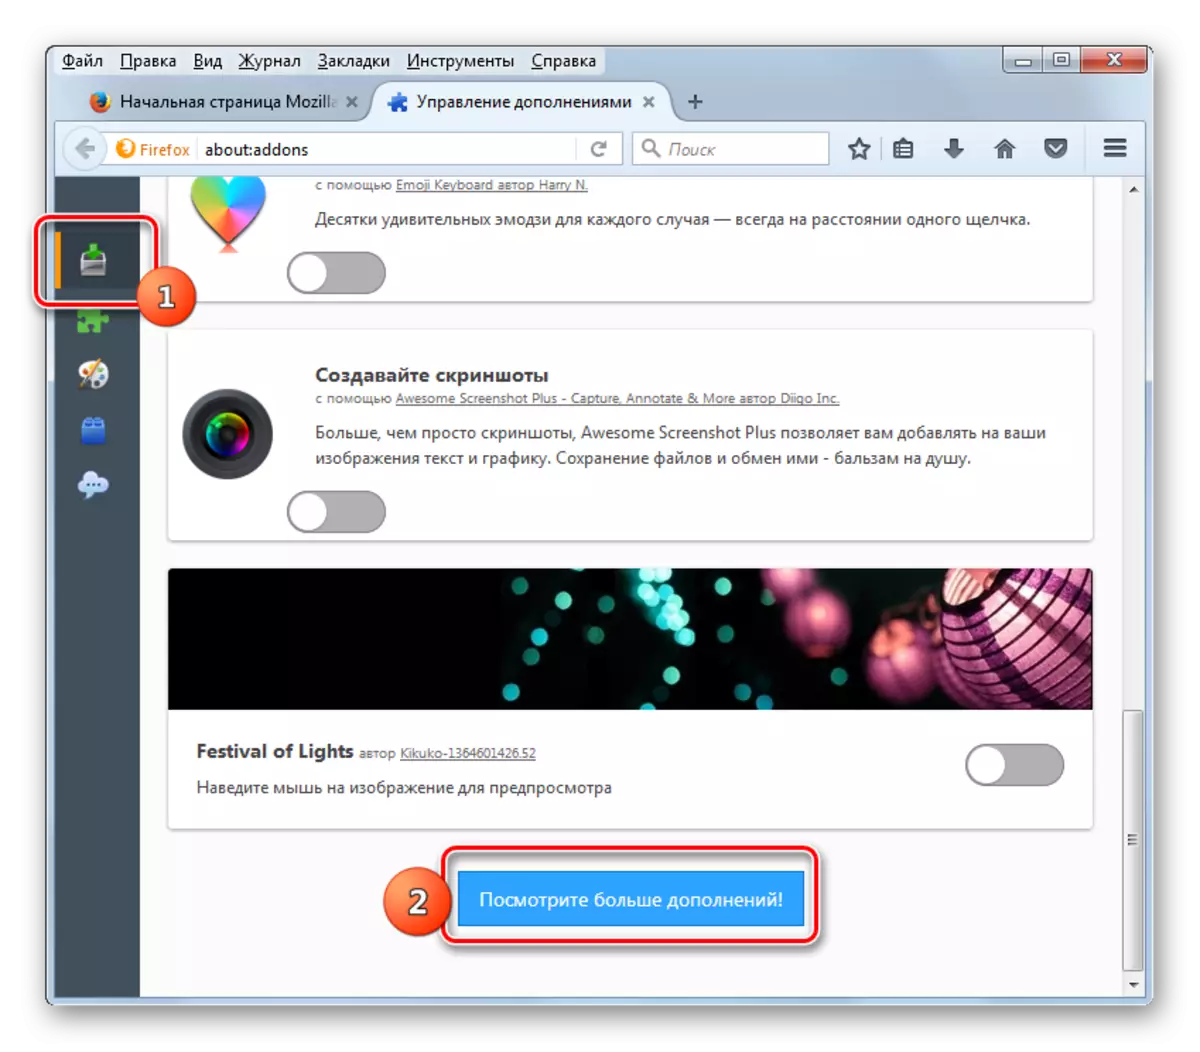 Iet saņemt papildinājumus pievienojumprogrammas vadības logā Mozilla Firefox pārlūkprogrammā